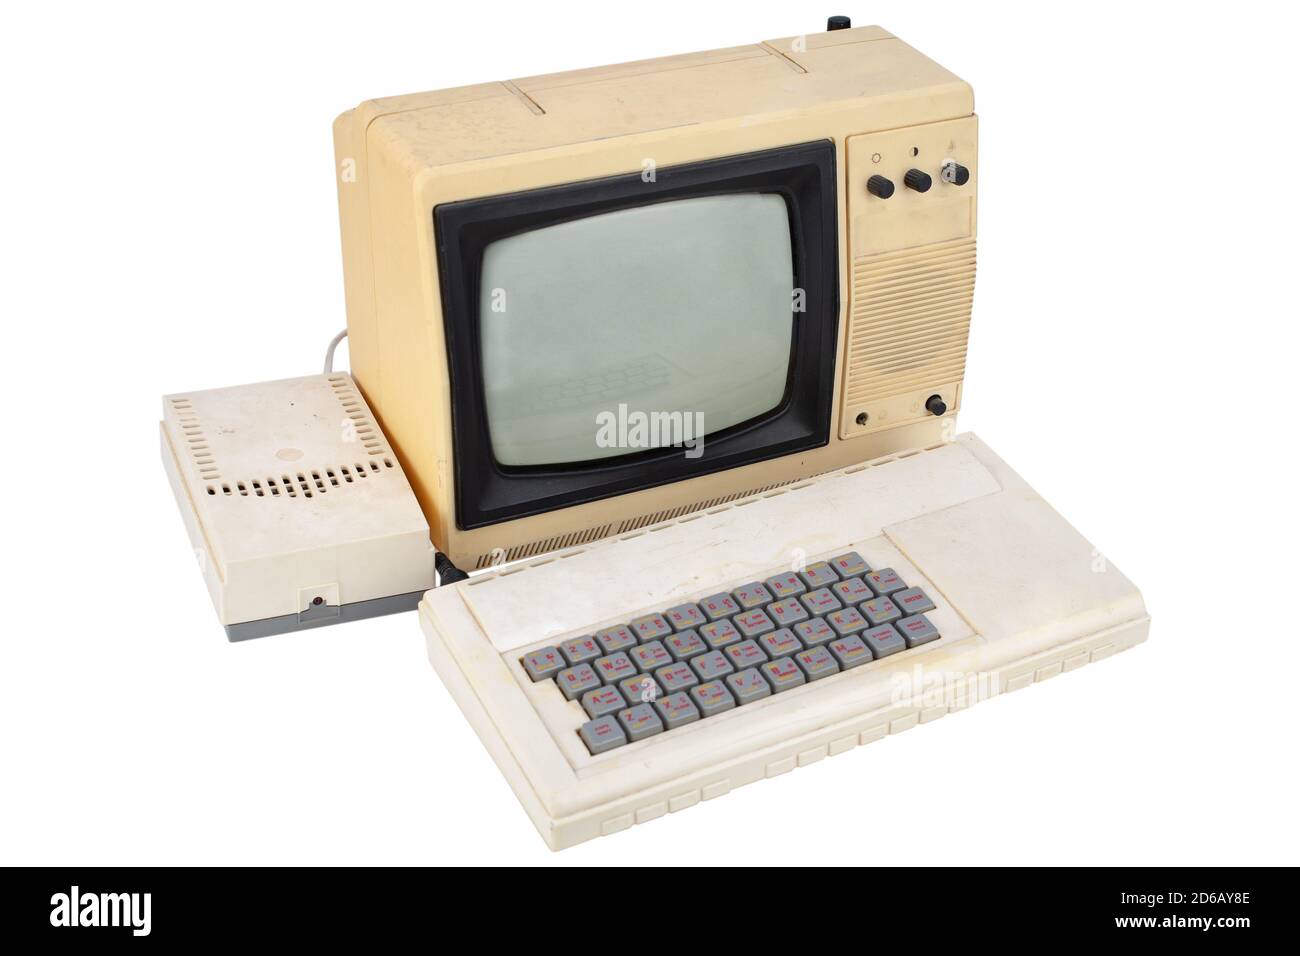 Alter 8-Bit-Computer mit Monitor vom fernseher isoliert Auf Weiß Stockfoto